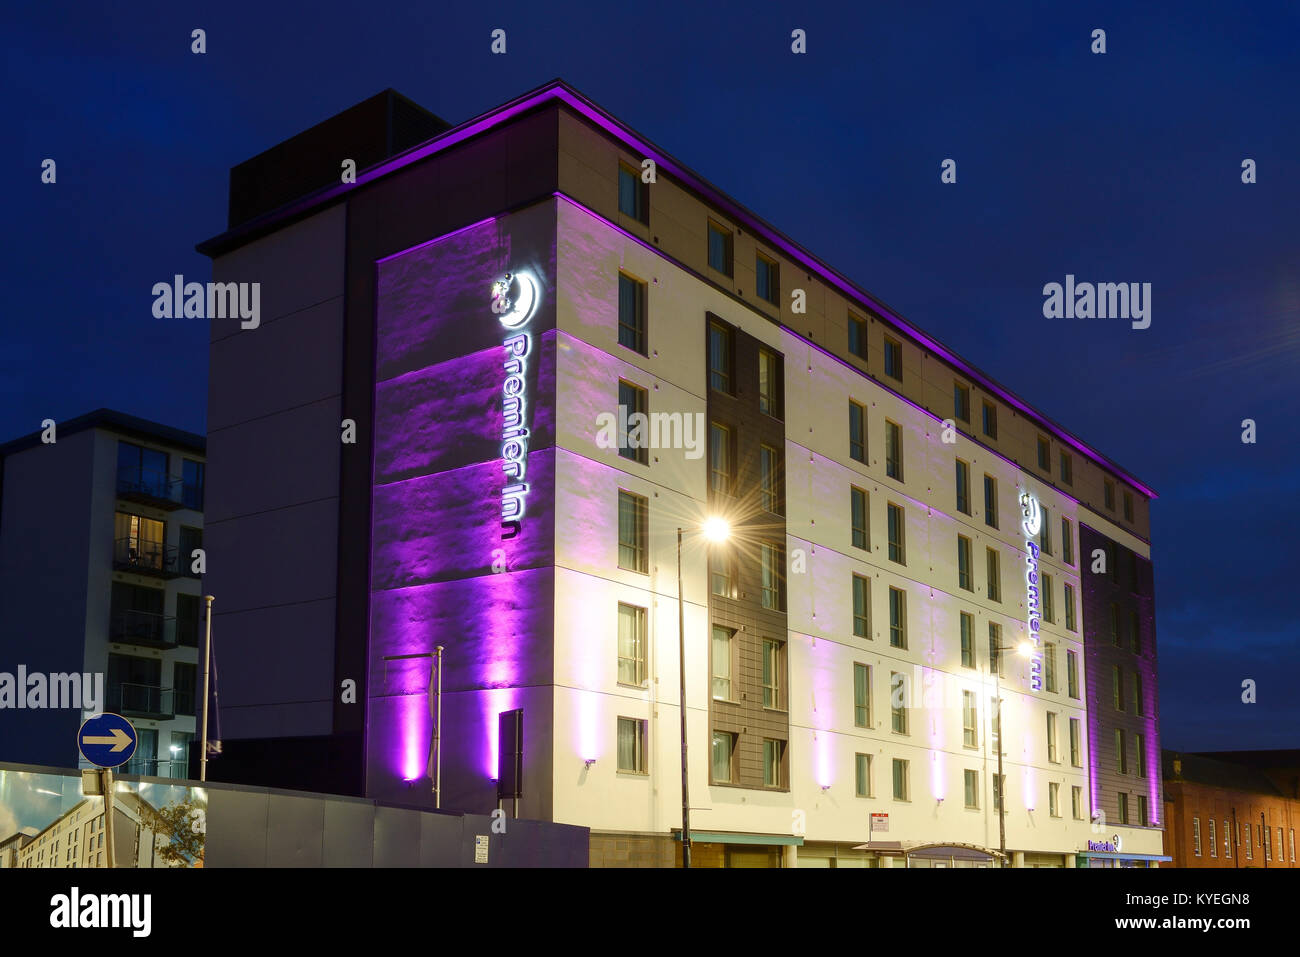 Hôtel Premier Inn dans la nuit dans le centre-ville de Derby UK Banque D'Images